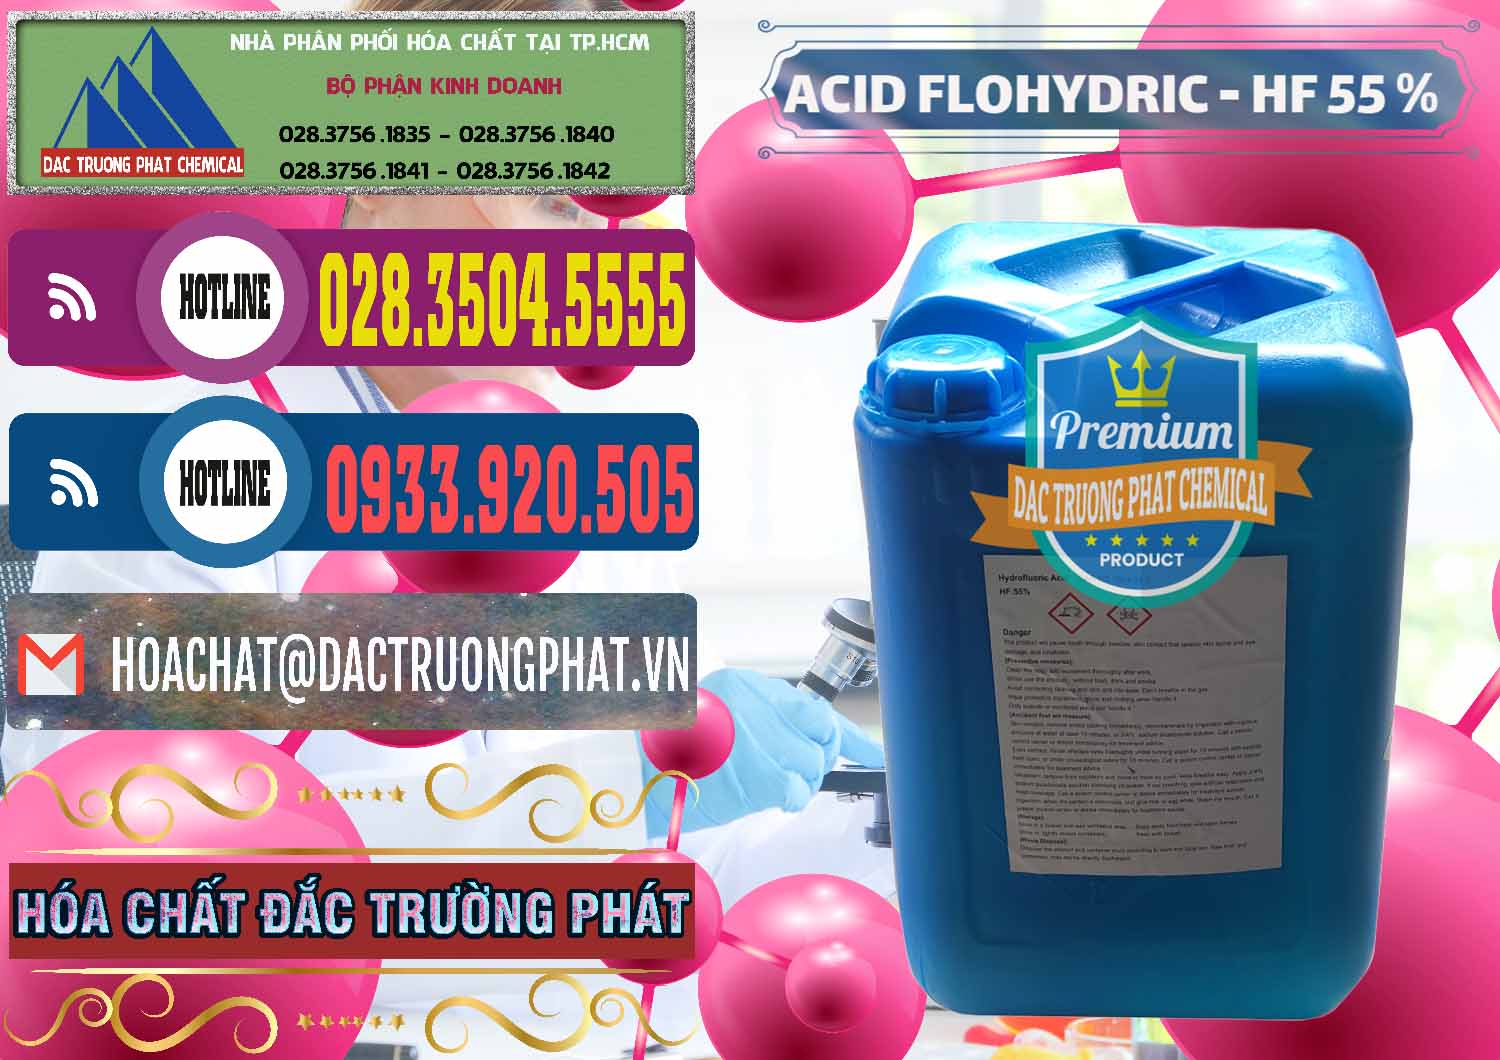 Cty chuyên bán & cung cấp Axit HF - Acid HF 55% Can Xanh Trung Quốc China - 0080 - Nơi phân phối _ cung cấp hóa chất tại TP.HCM - muabanhoachat.com.vn